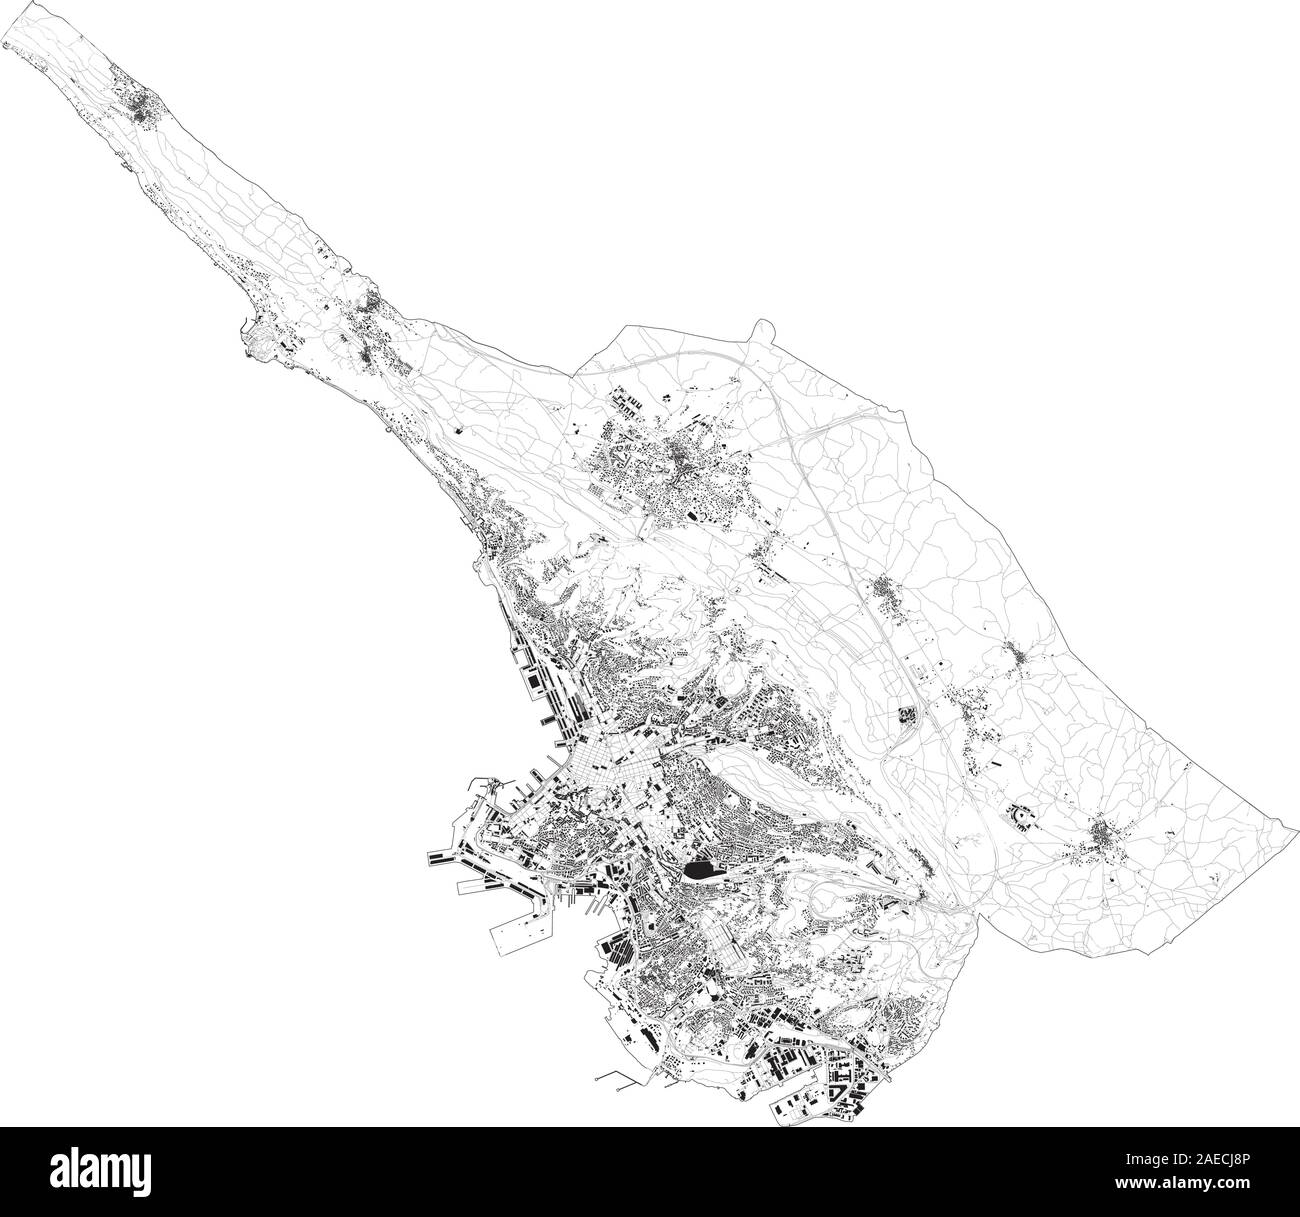 Mapa satelital de Trieste, ciudades y carreteras, edificios y carreteras de los alrededores. Friuli-Venezia Giulia, Italia. Mapa de carreteras de circunvalación, Ilustración del Vector